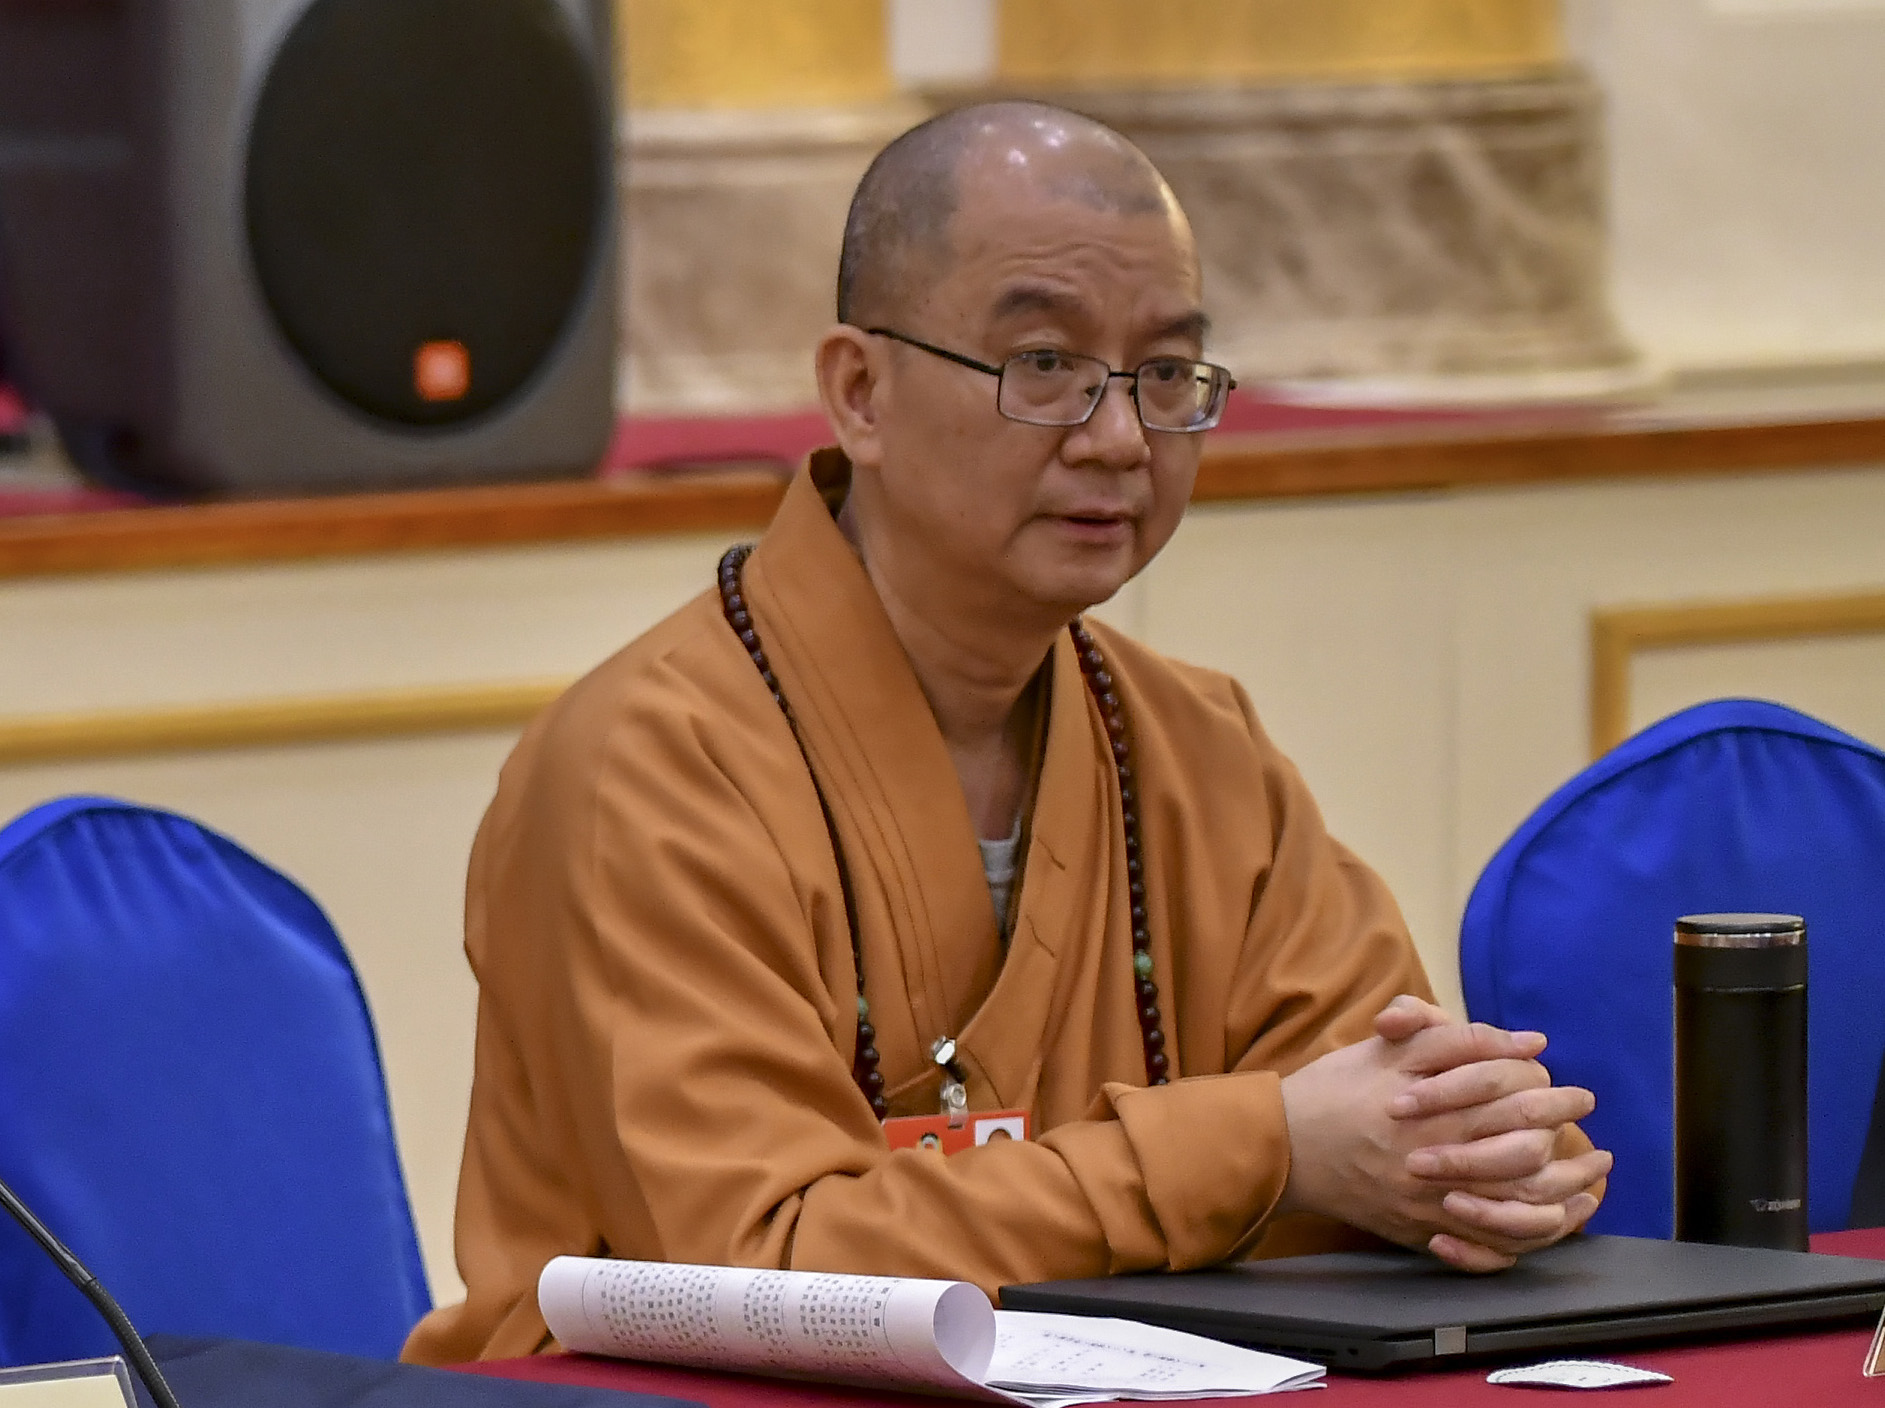 Reconocido monje budista renuncia tras acusaciones de abuso sexual